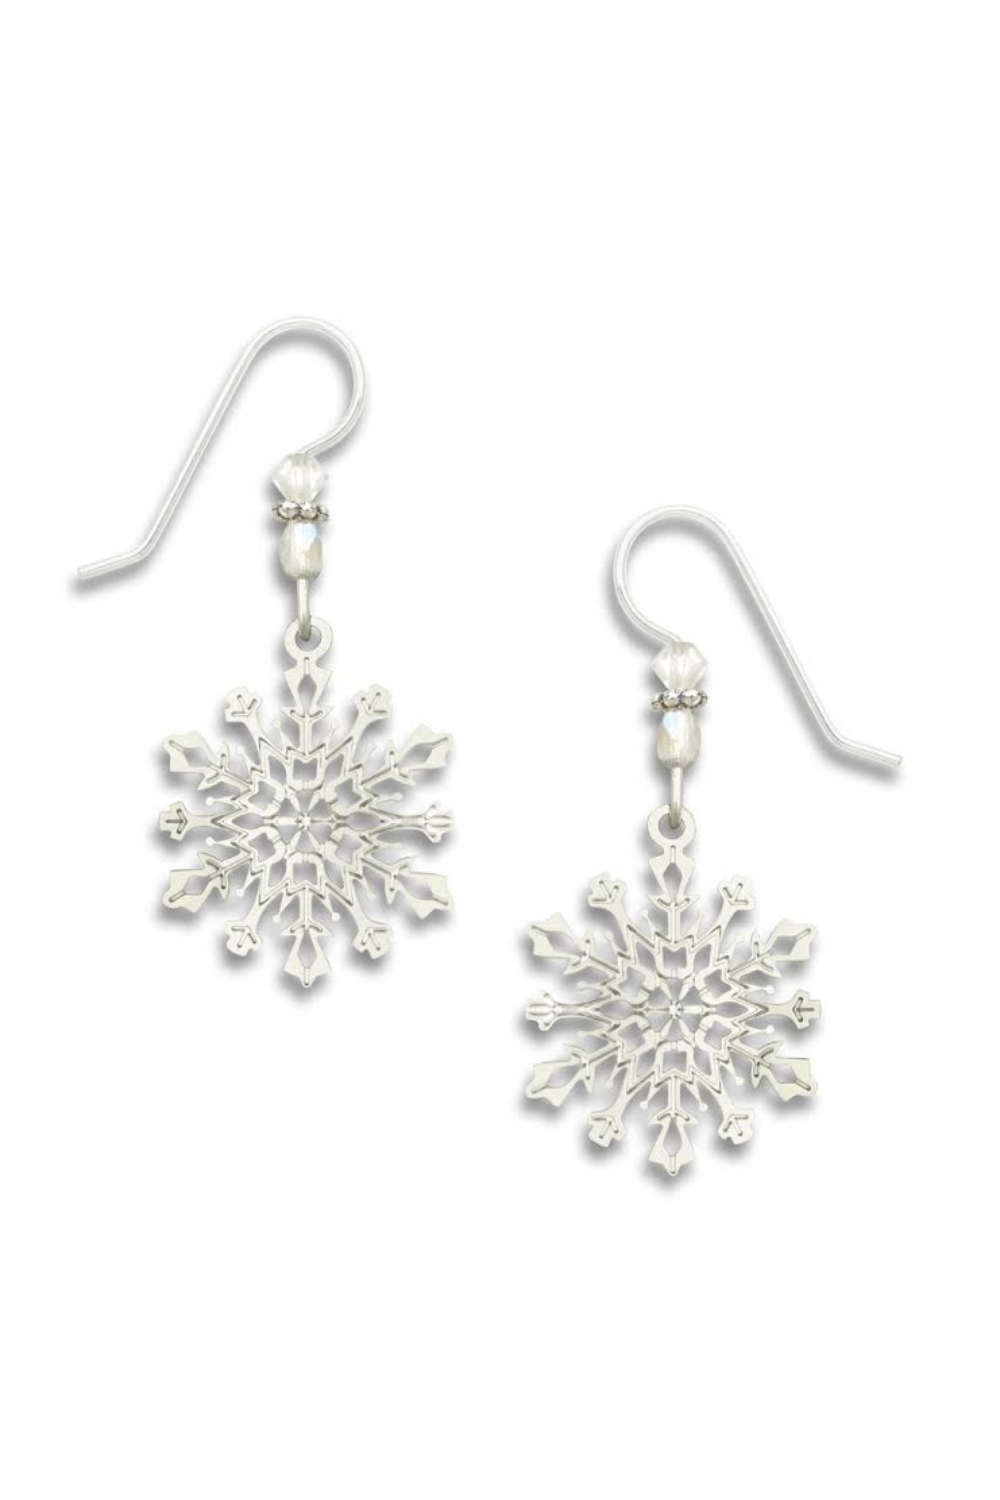 Sienna Sky Silver Snowflake Earrings